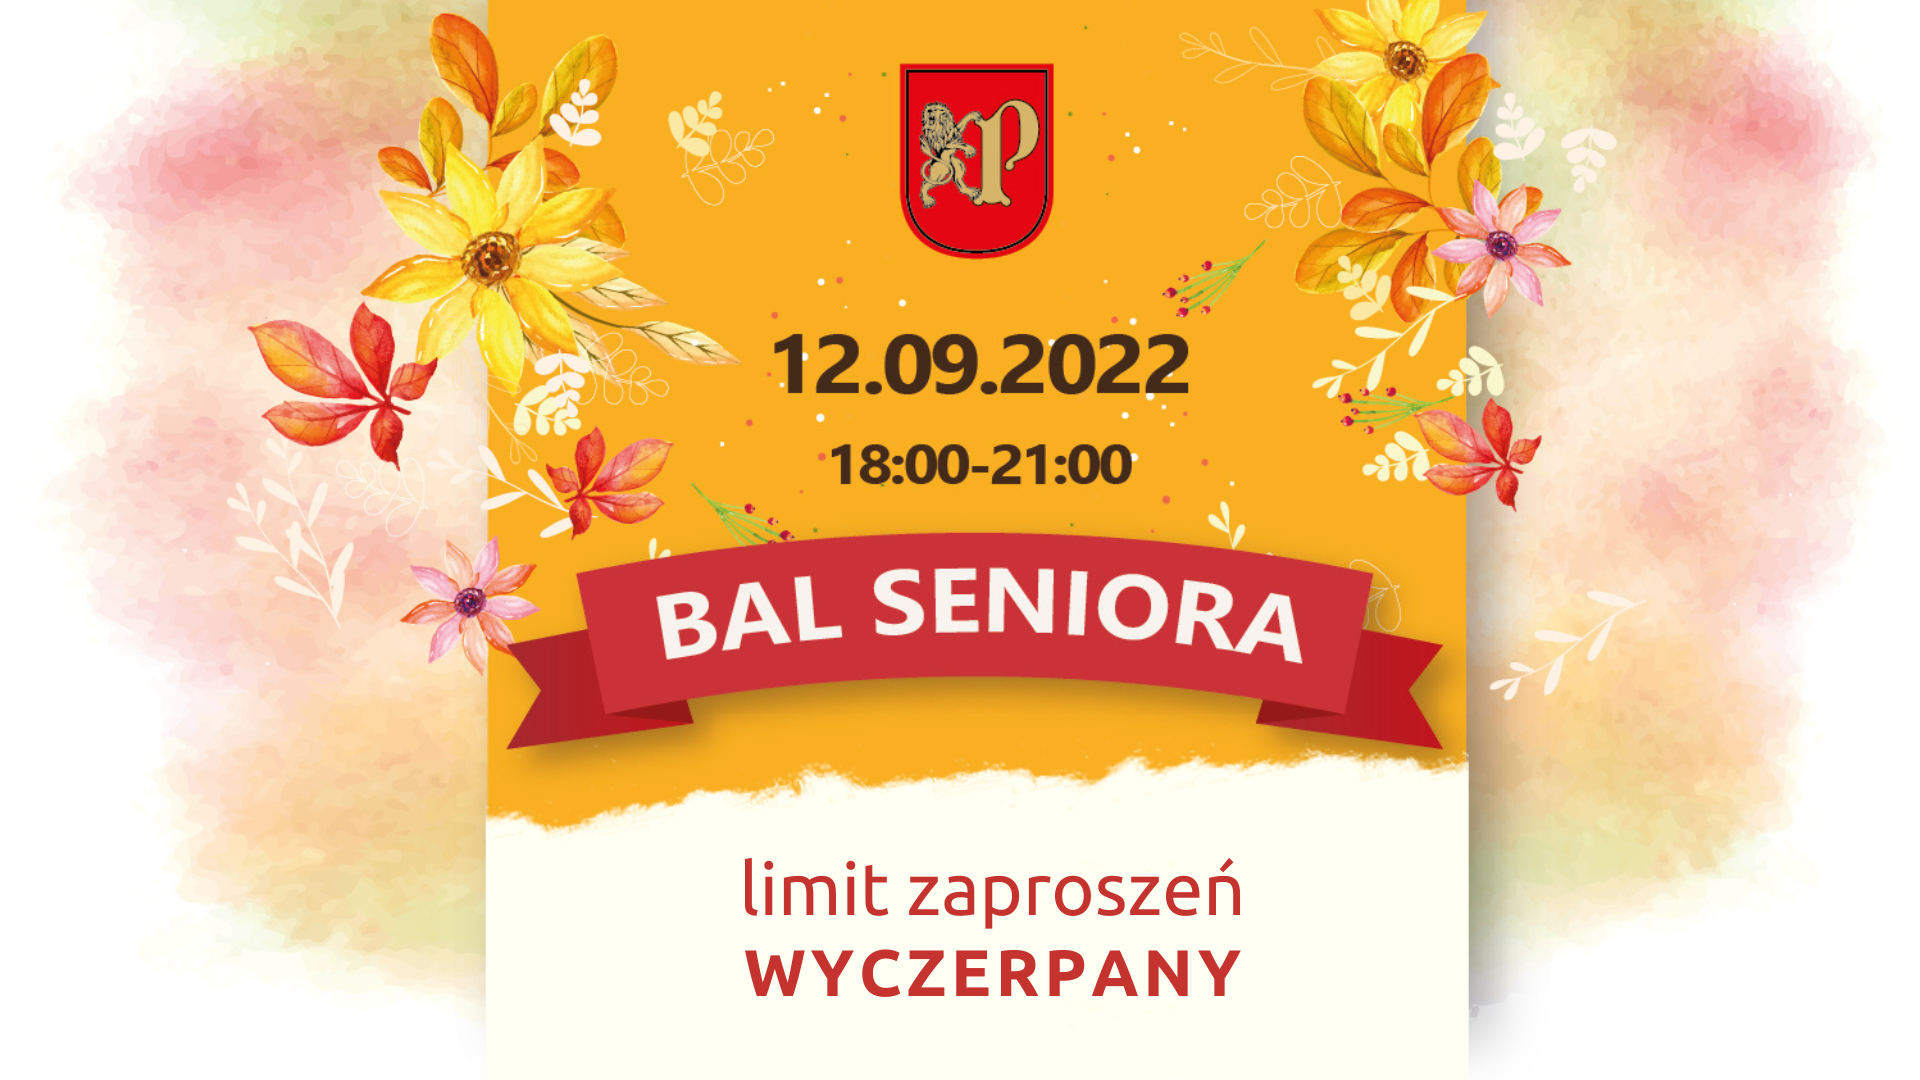 2022 Bal Seniora 2022 - limit zaproszeń został wyczerpany